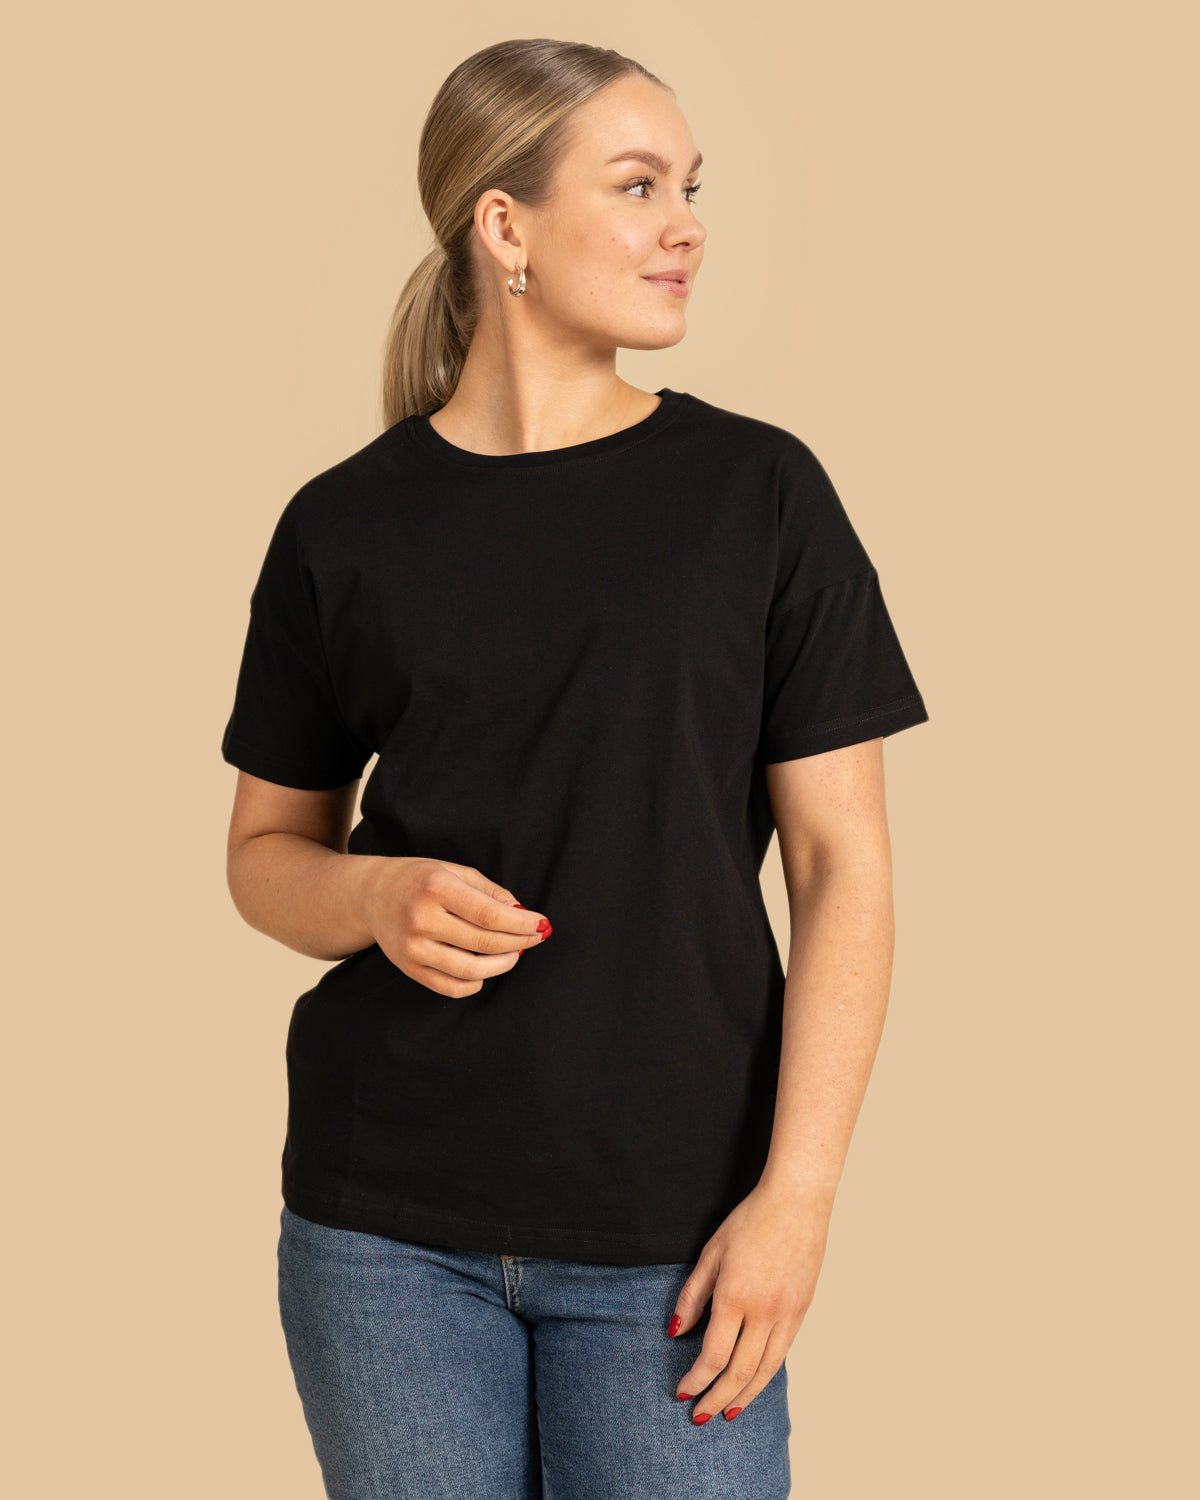 Musta Noki t-paita o-pääntie RIVA Clothing.